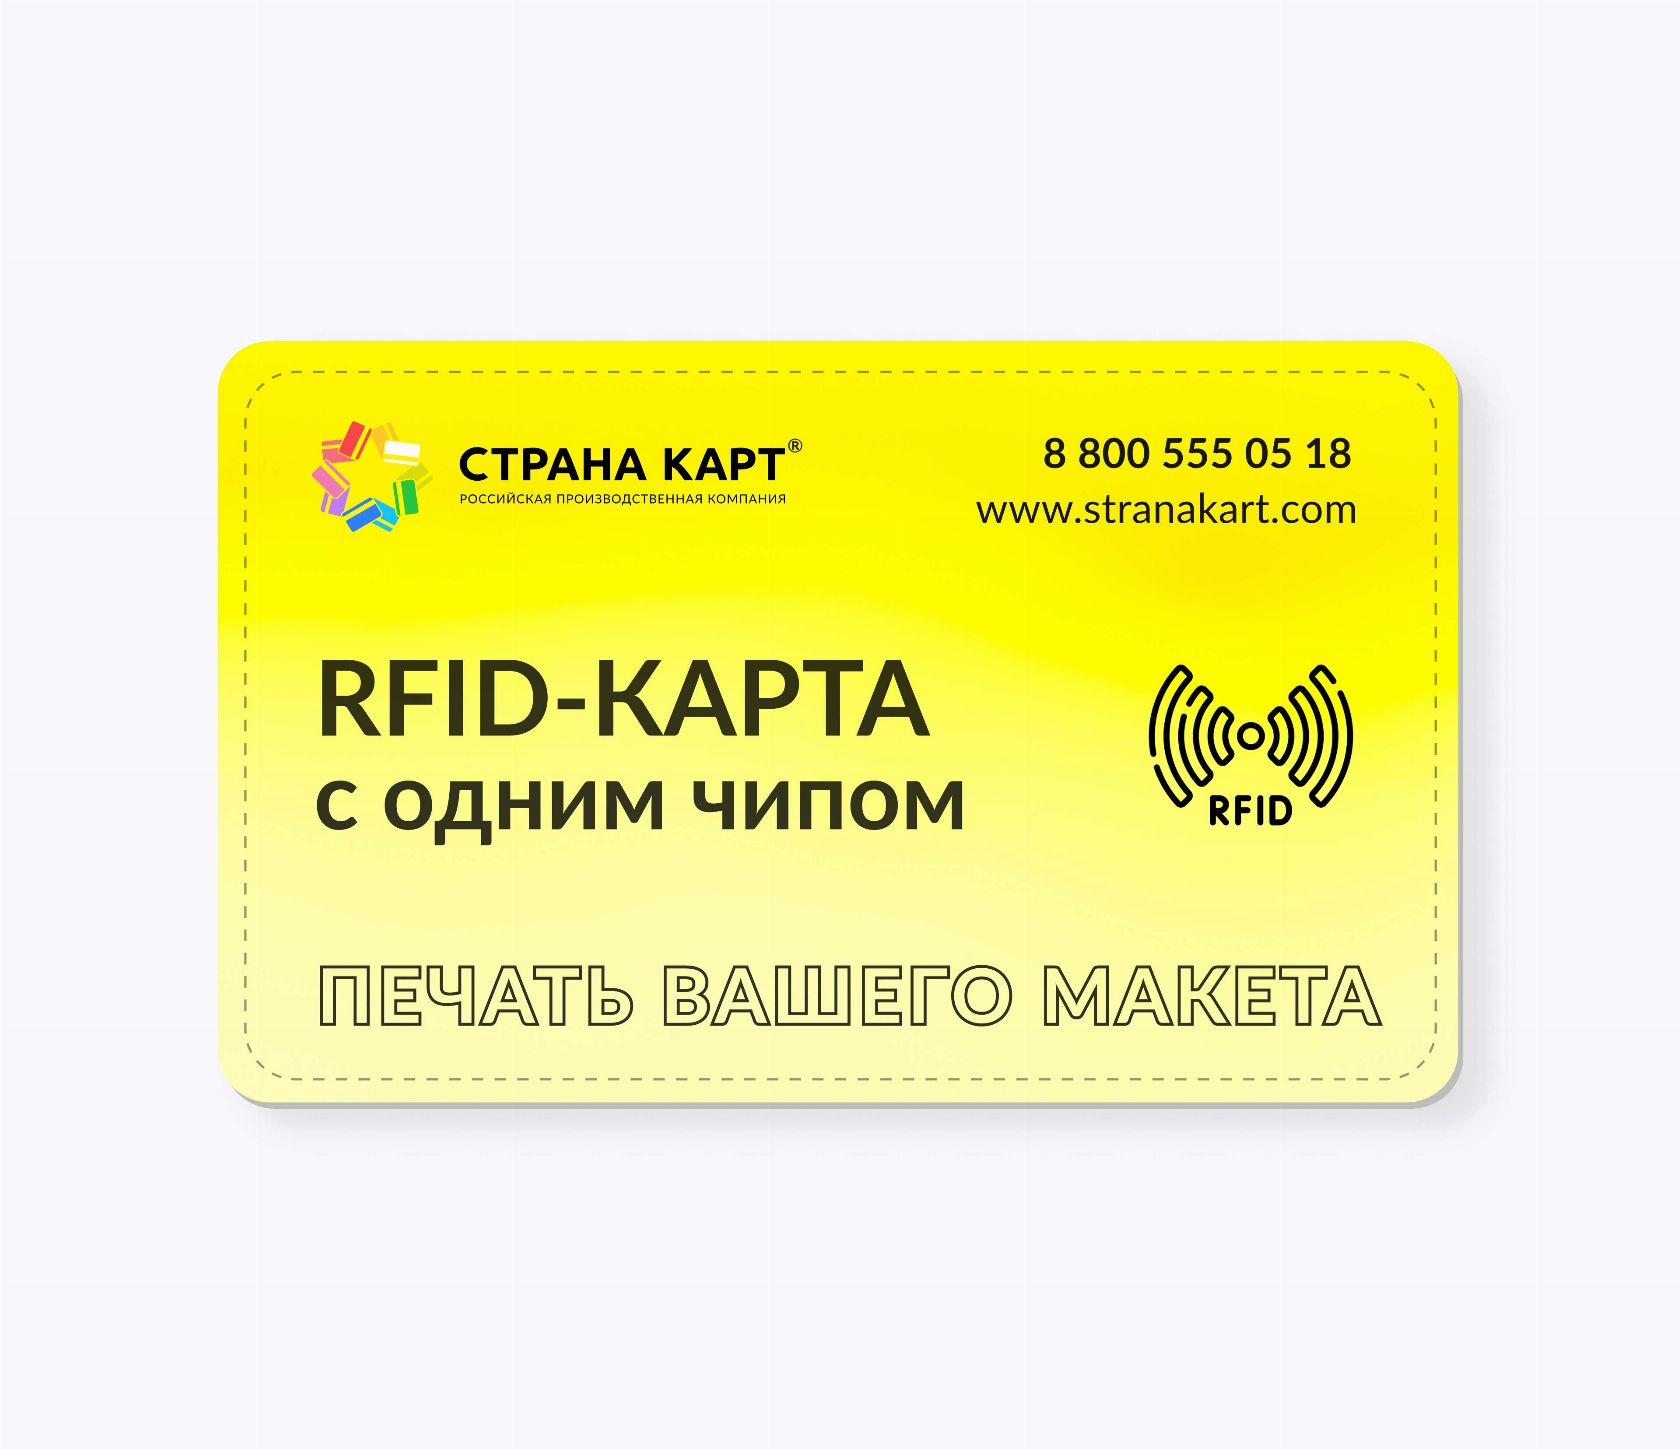 RFID-карты с чипом NXP NTAG 213 NFC печать вашего макета RFID-карты с чипом NXP NTAG 213 NFC